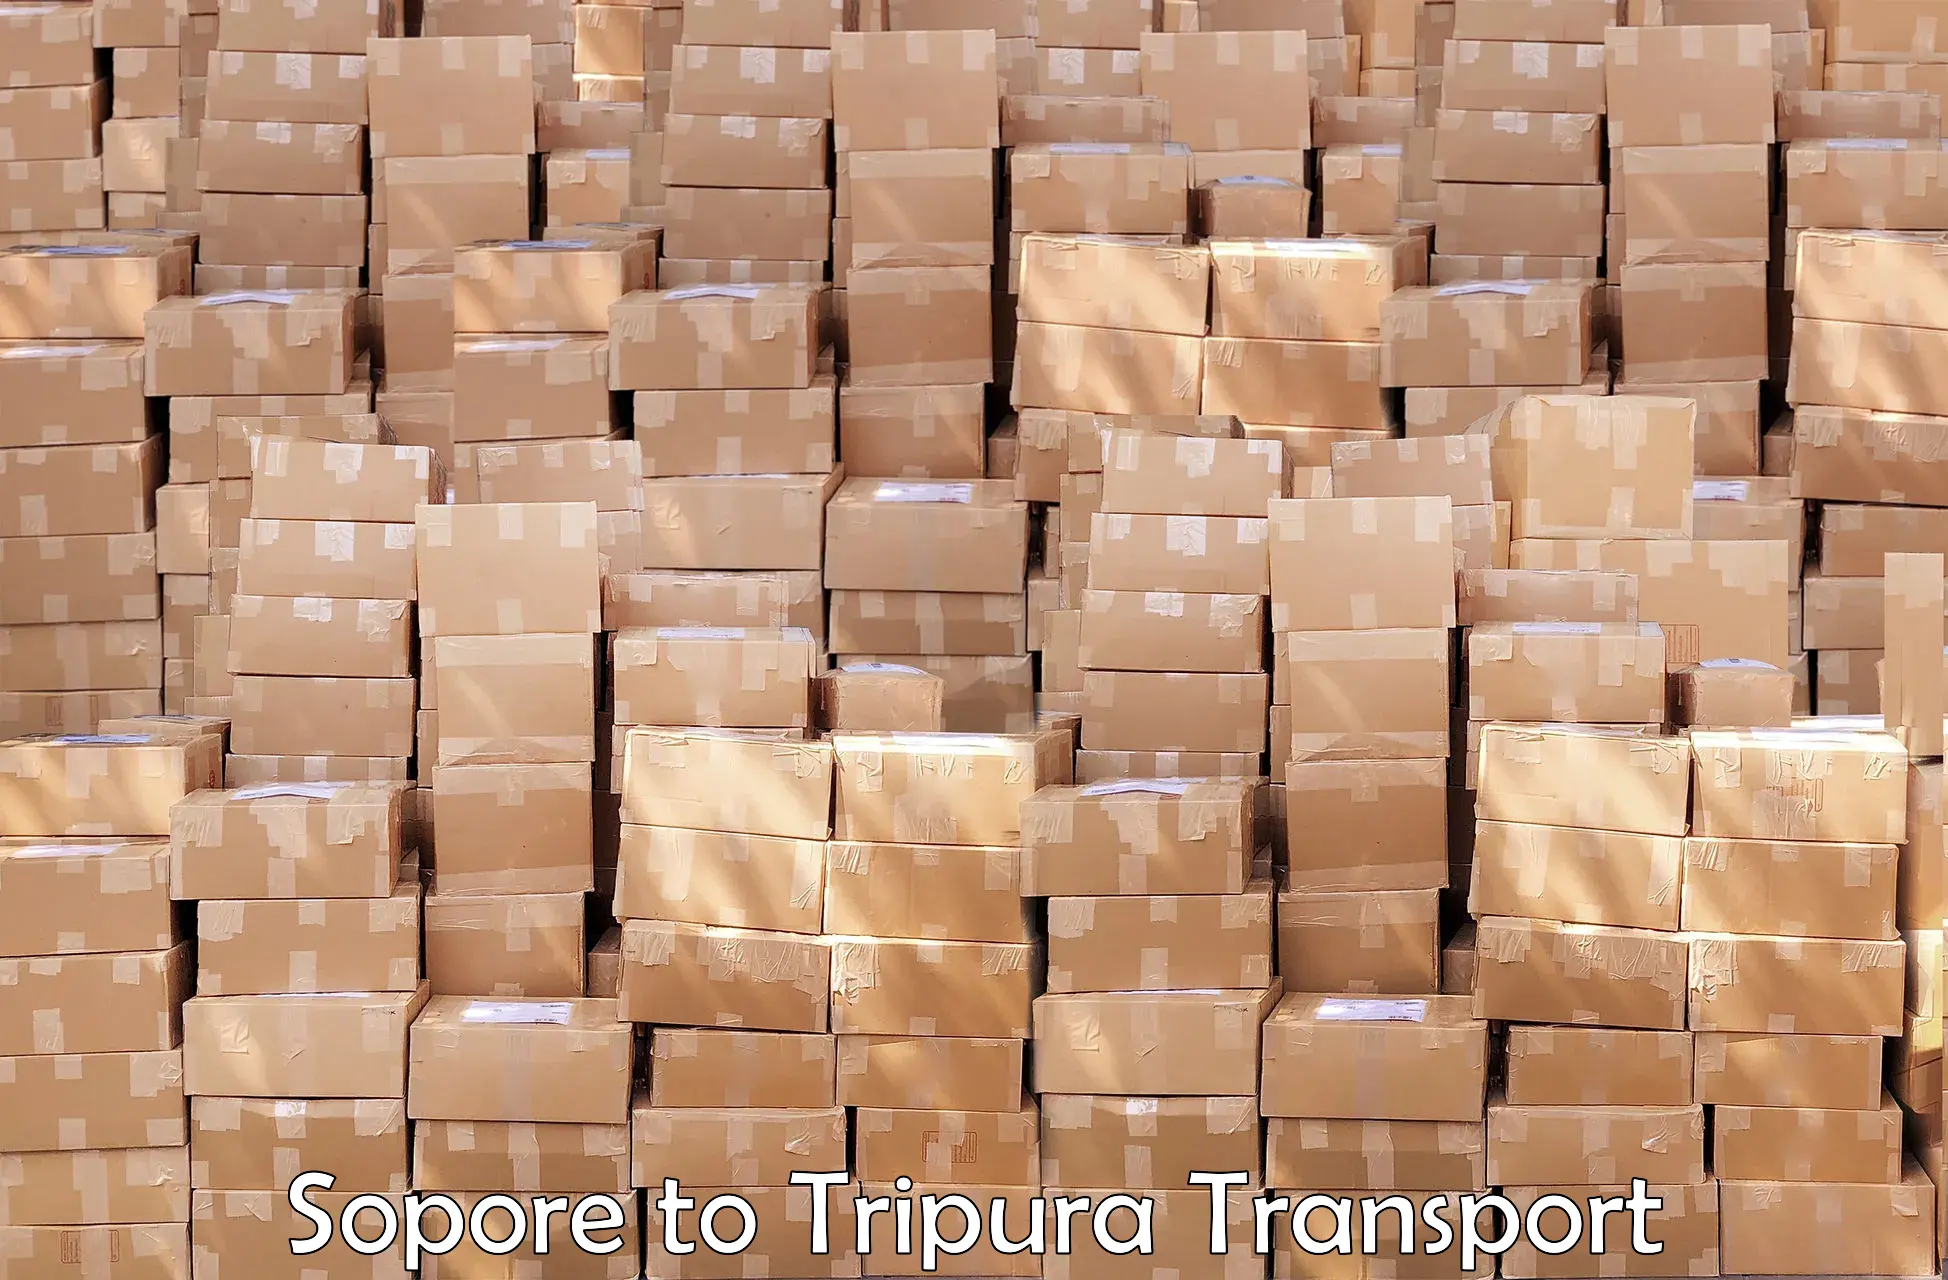 Container transport service Sopore to Ambassa